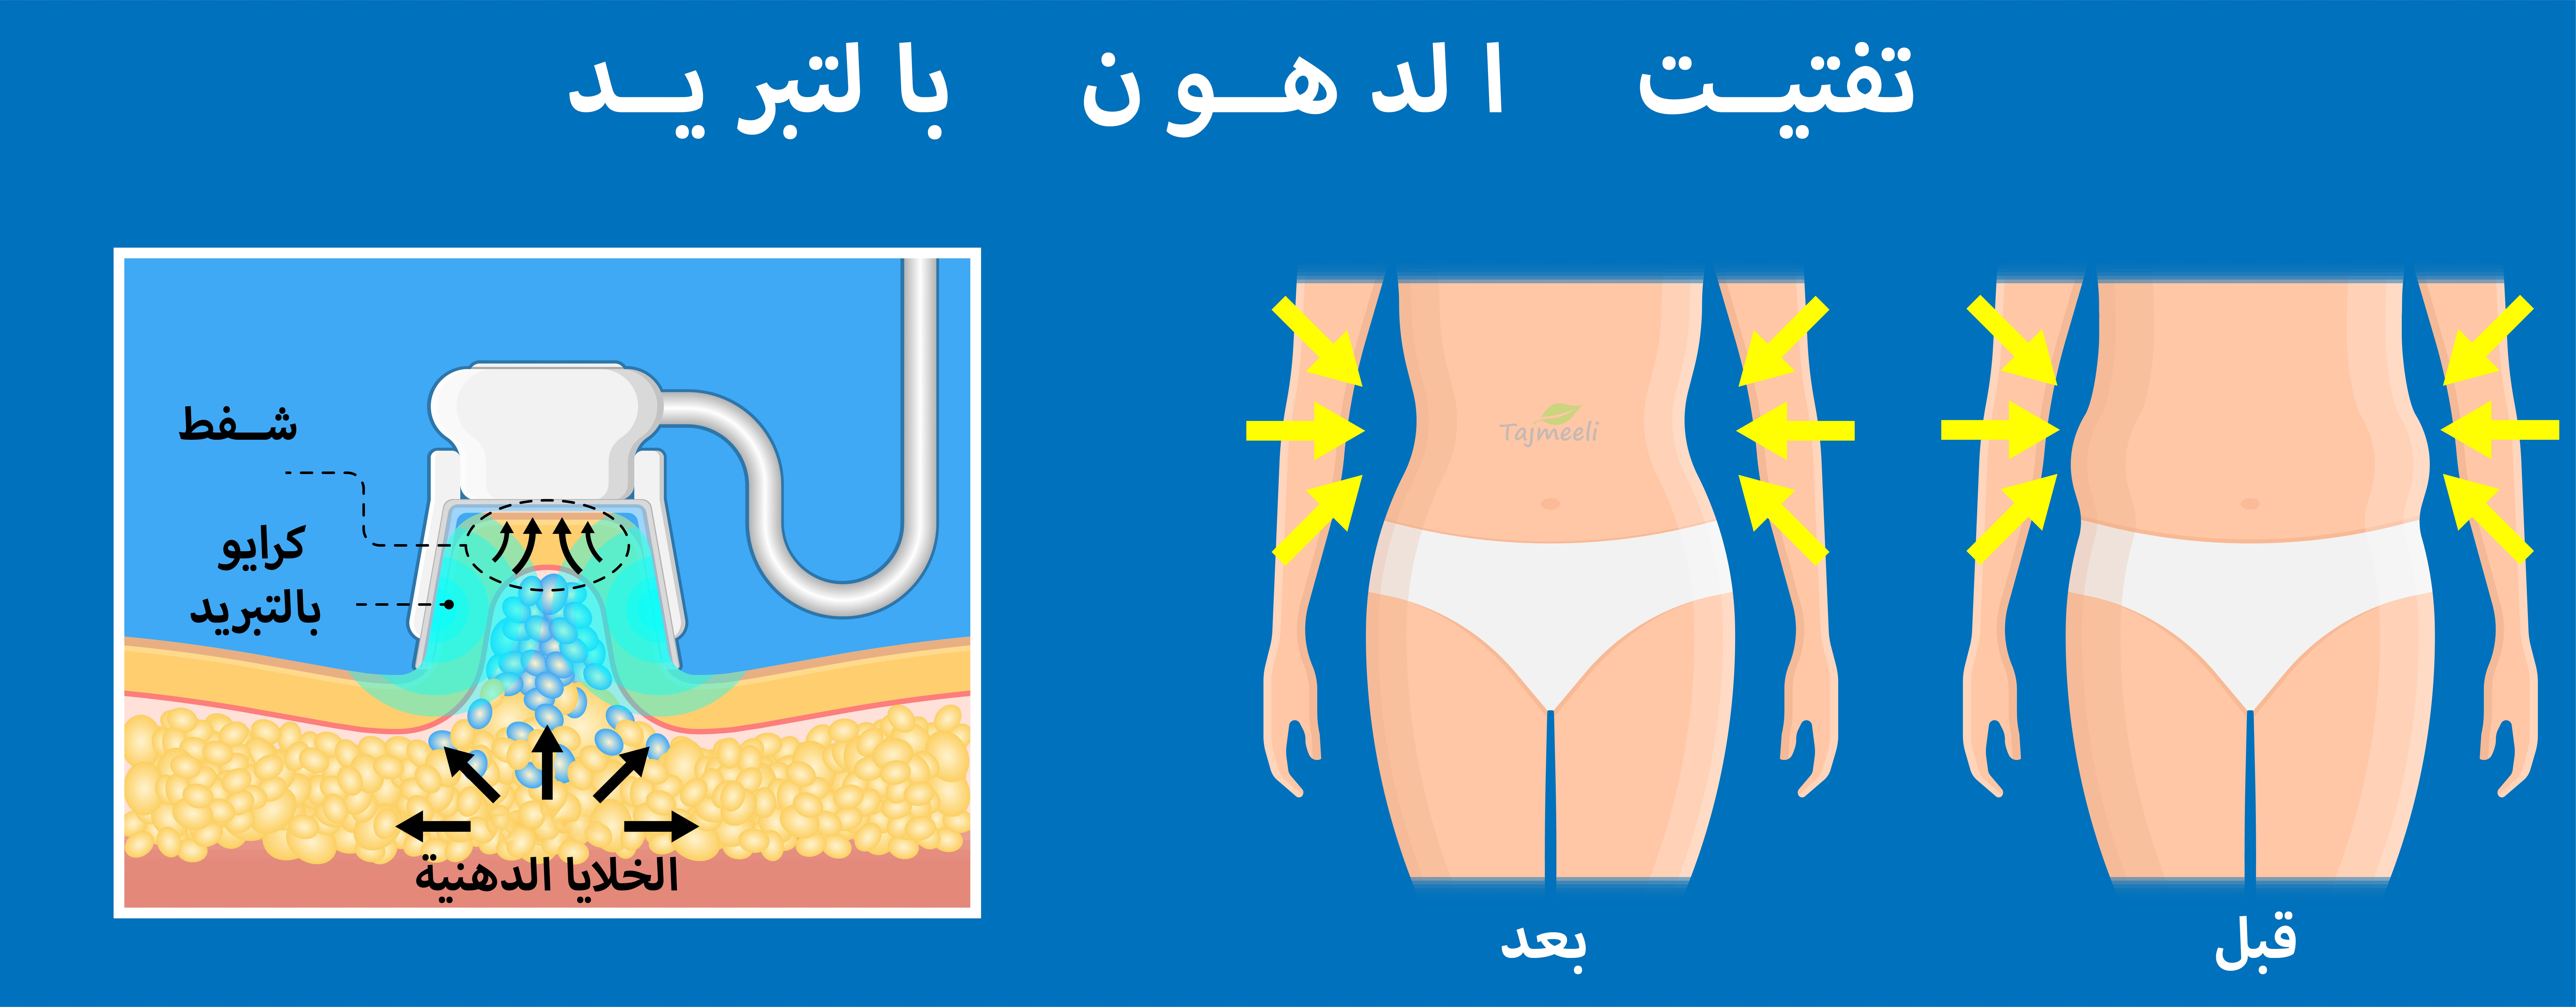 ما هي عملية شفط الدهون بالفيزر في القاهرة؟